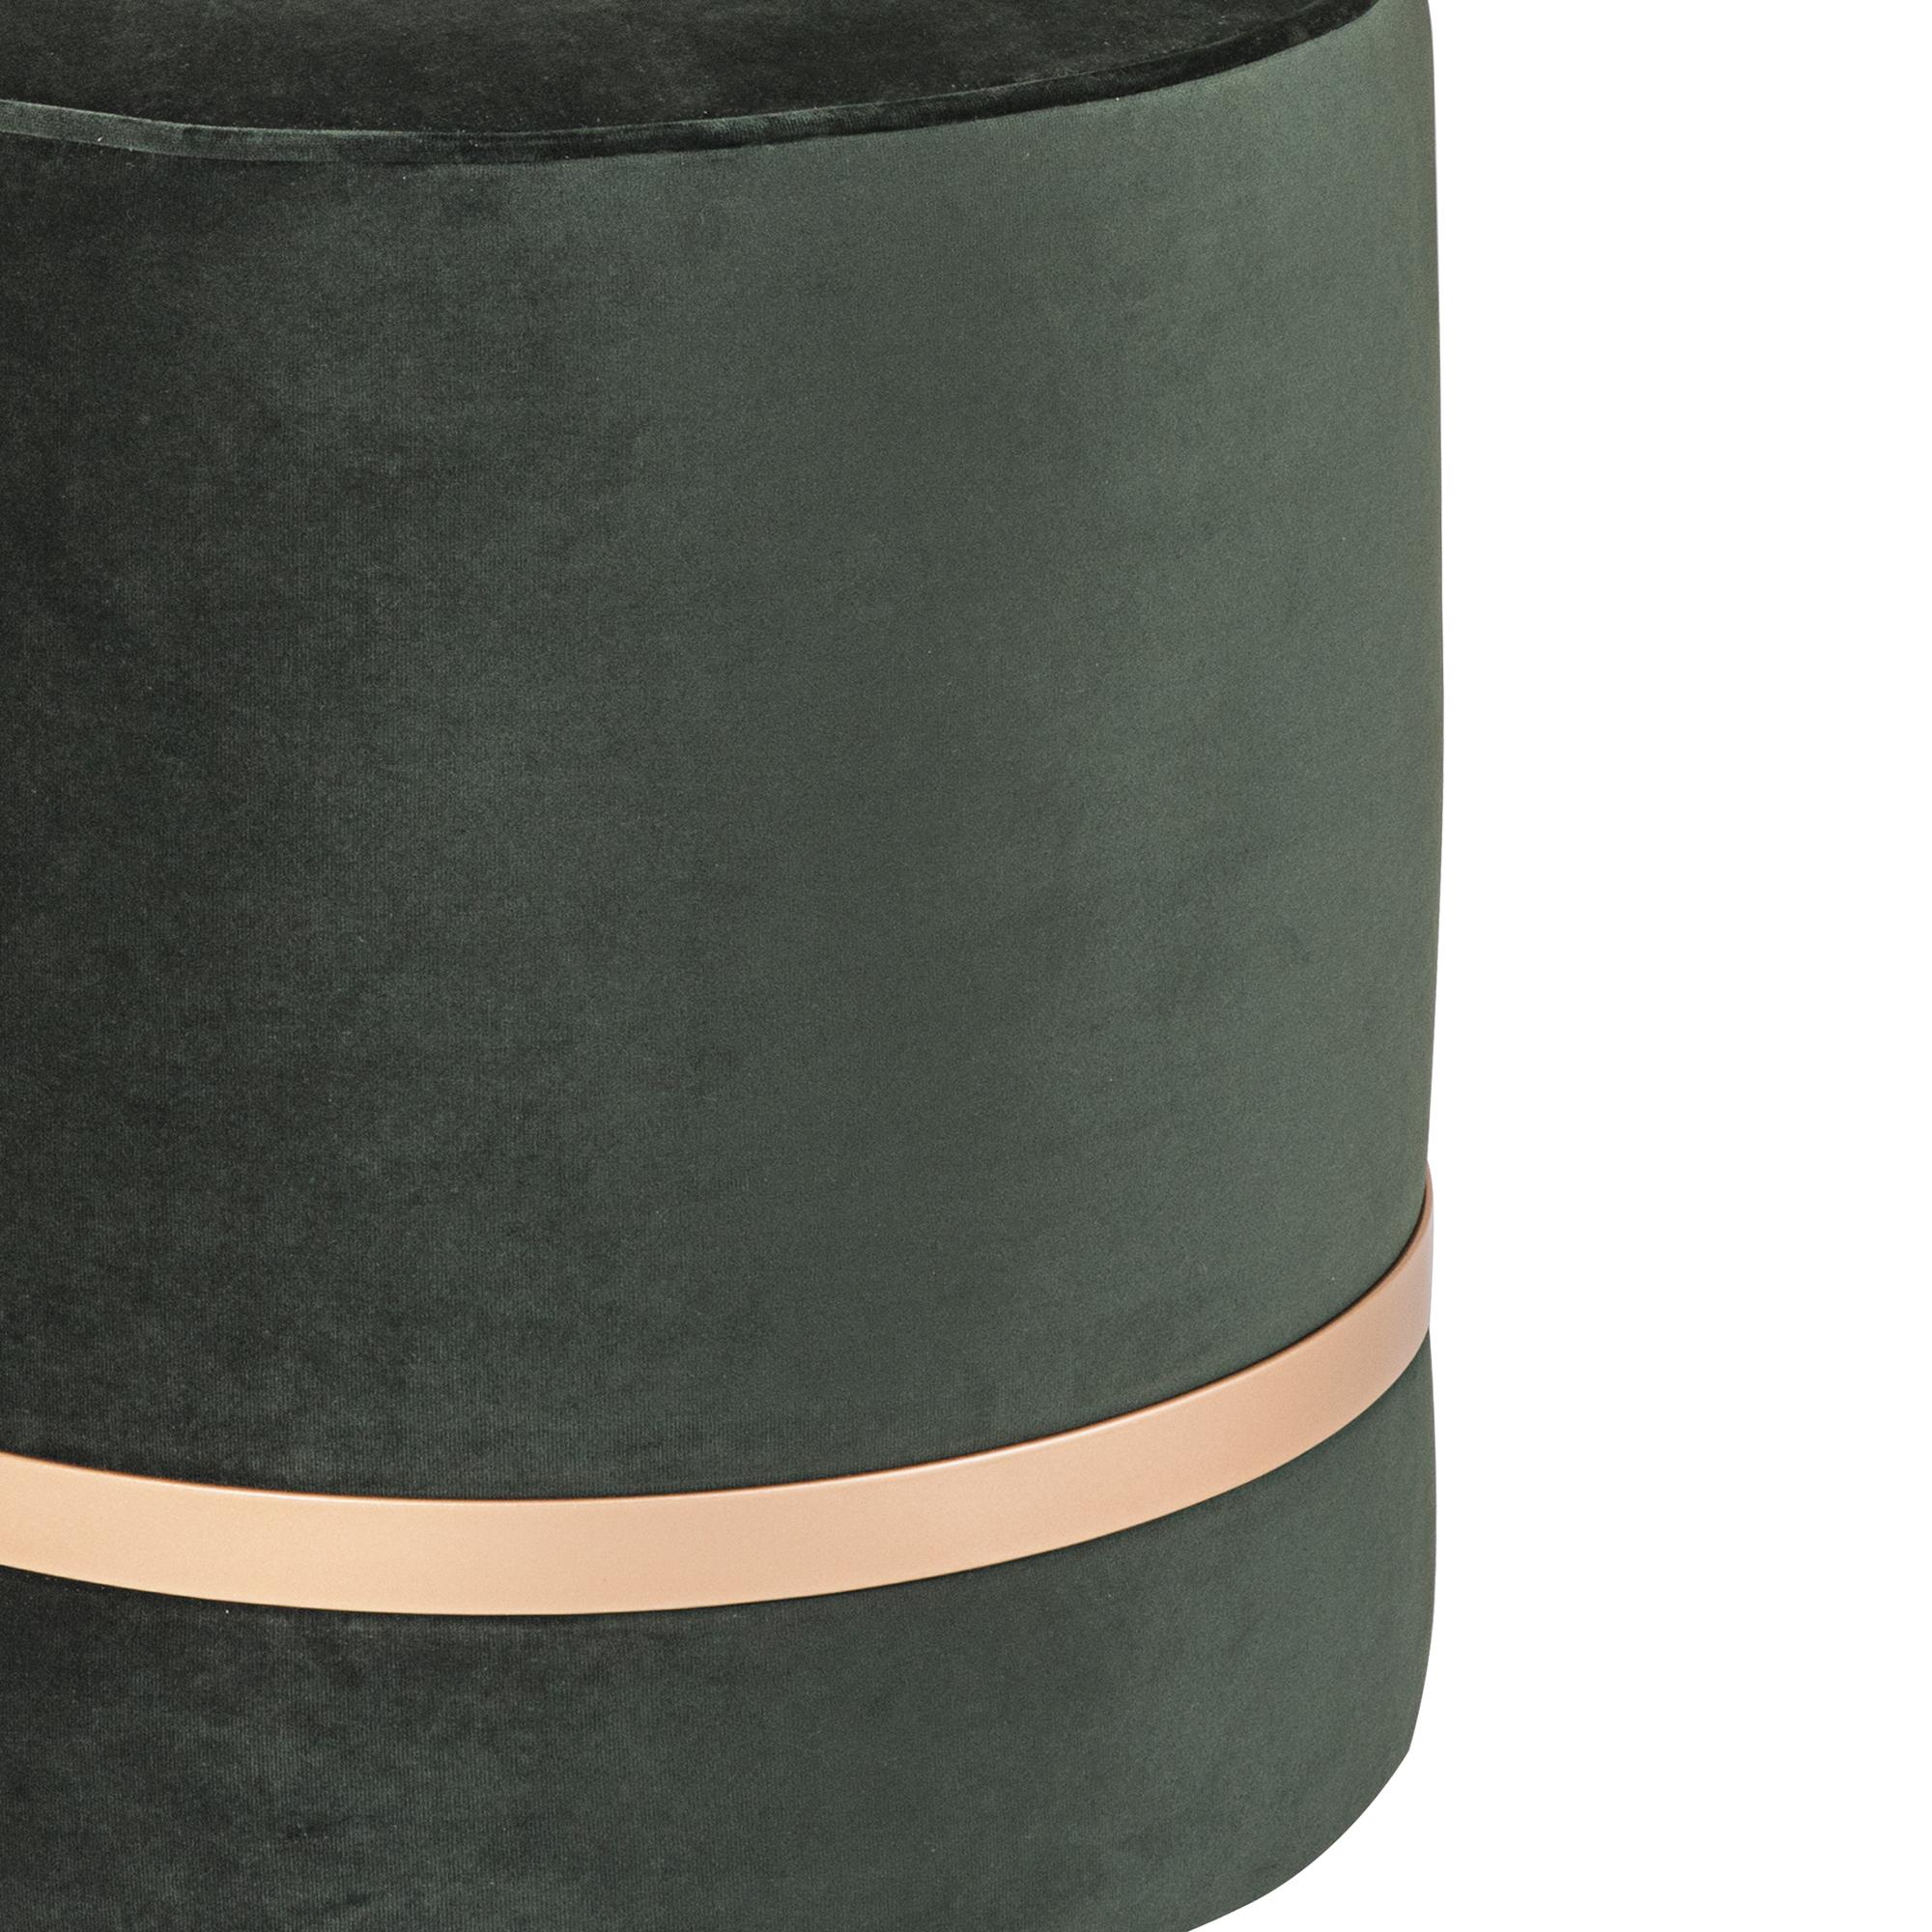 Le pouf a une forme ronde et est fabriqué à l'intérieur avec du bois et de la mousse. Il est revêtu d'un tissu de velours dans les options : Vert, noir, rose clair et blanc cassé, mais il peut également être personnalisé dans un autre type de